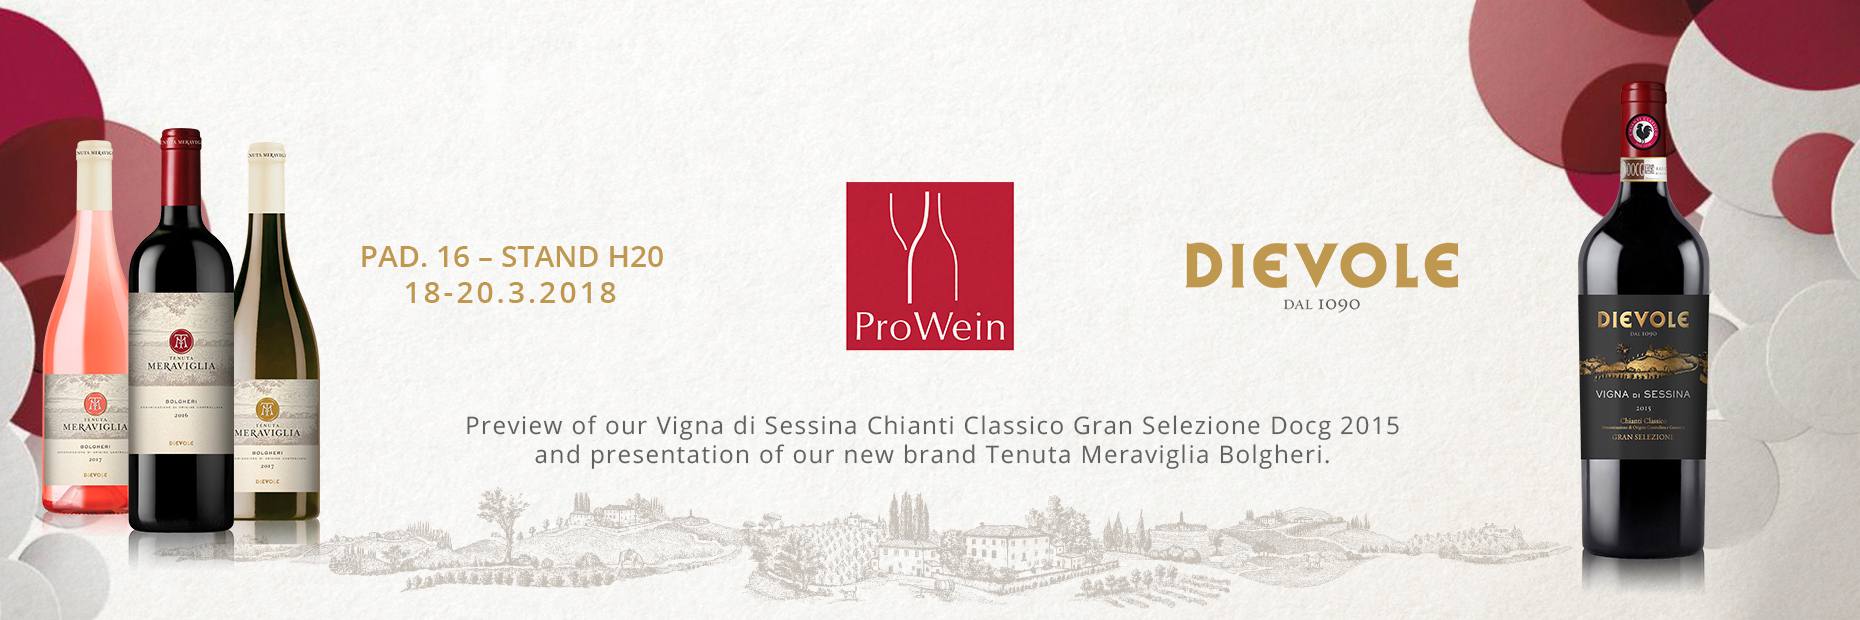 Chianti Classico Wine Resort in Italy. Dievole Winery